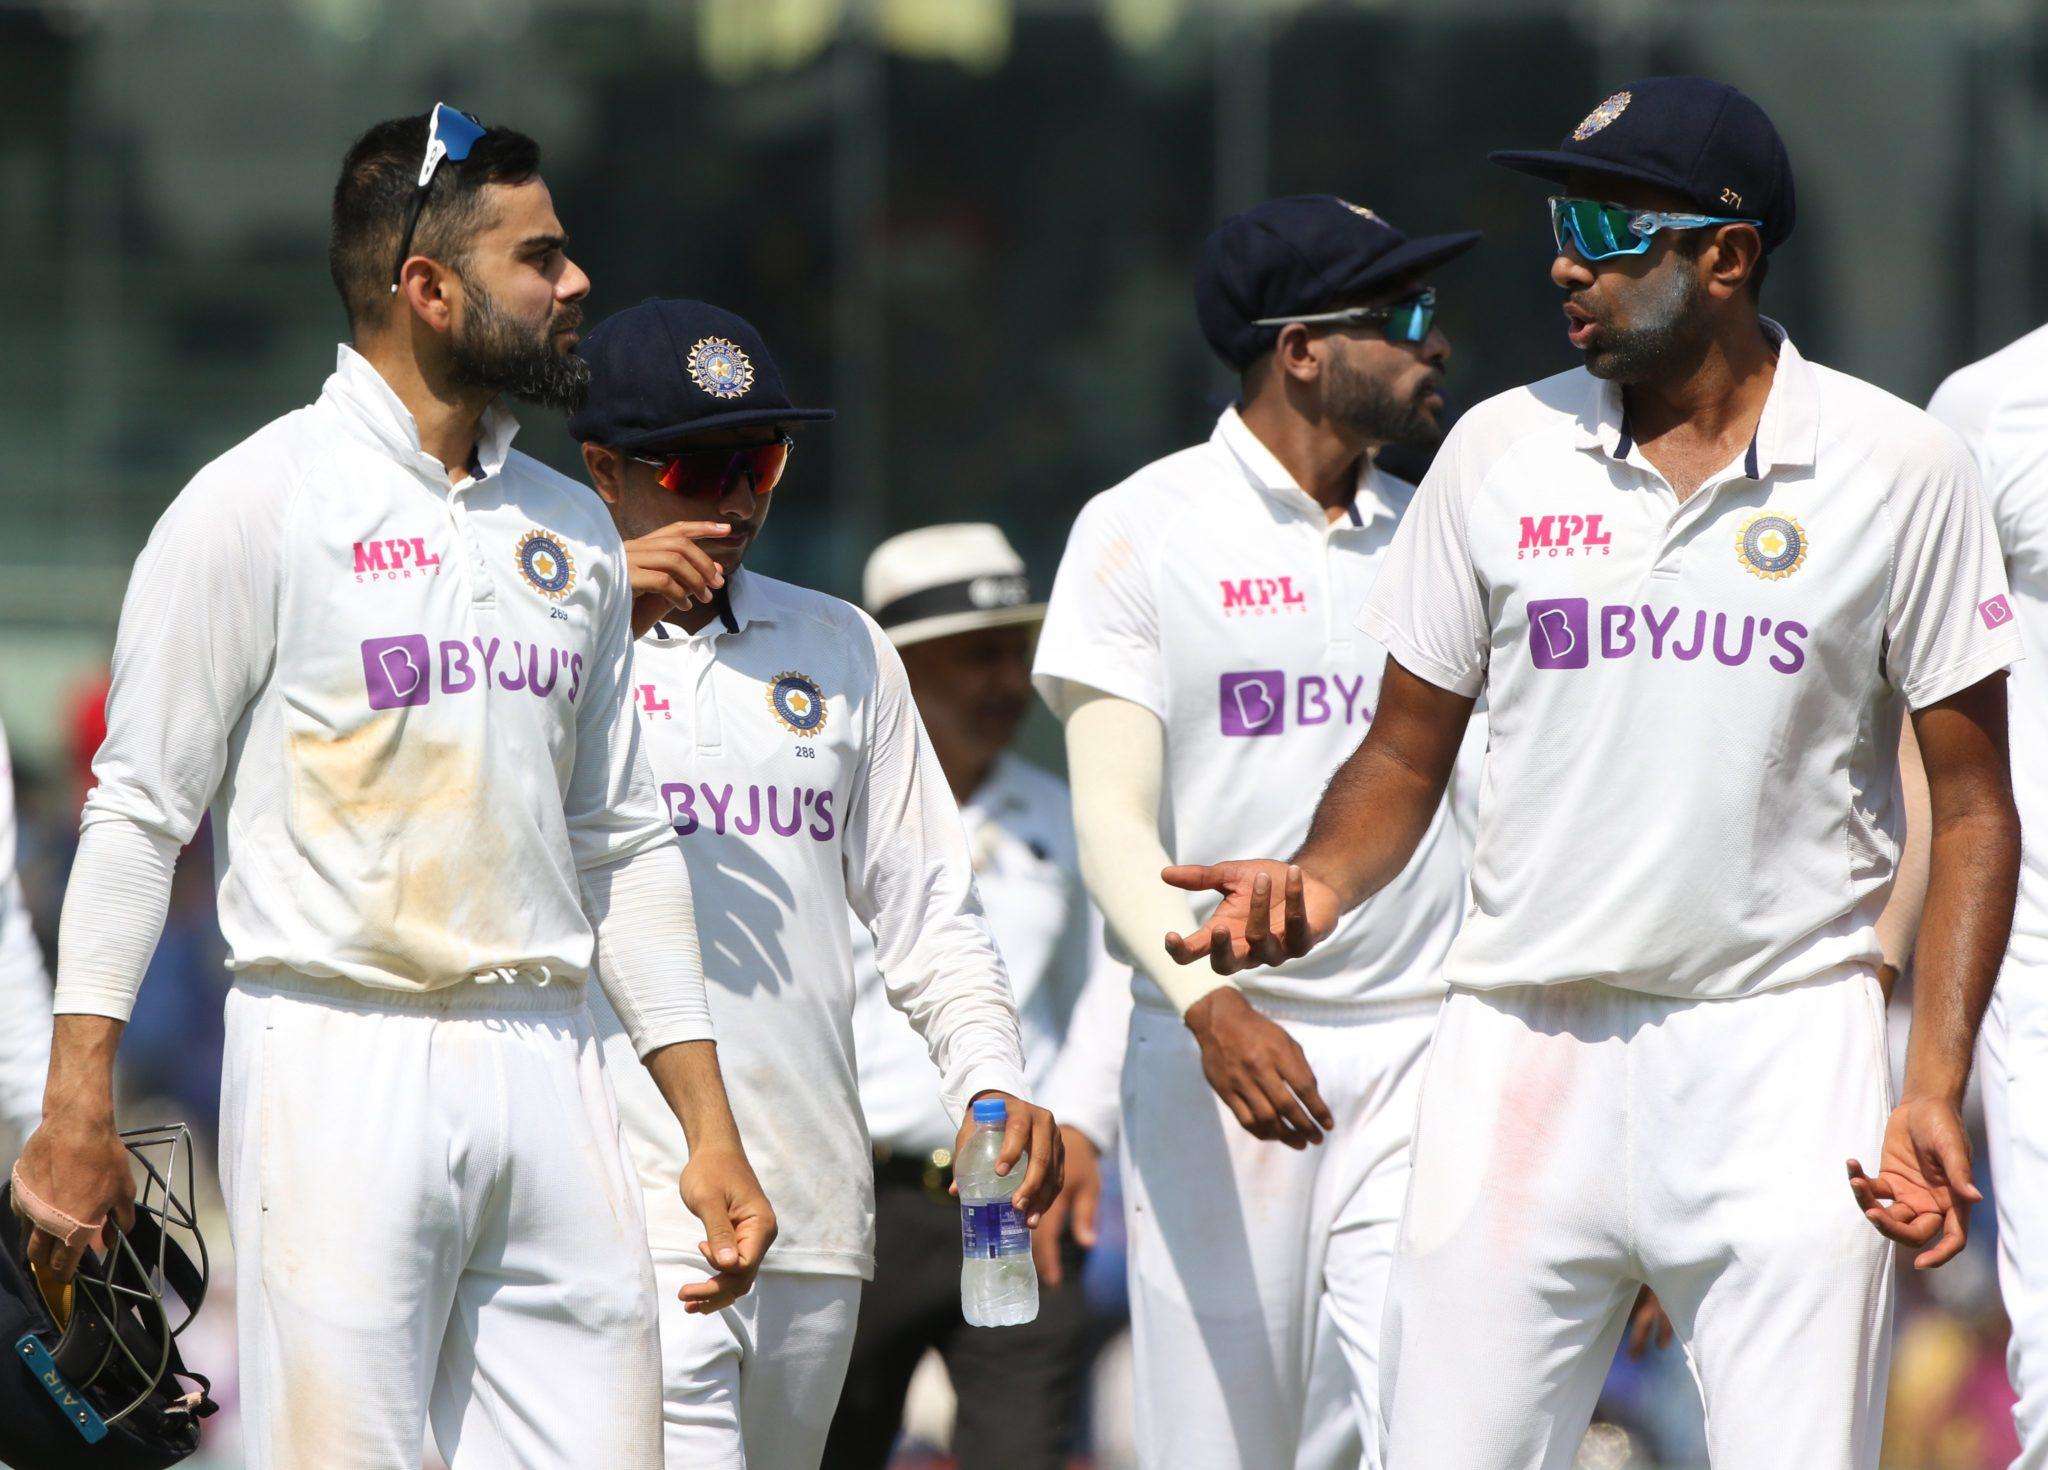 ICC World Test Championship के फाइनल में भारत का मुकाबला होगा न्यूजीलैंड से, जानिए कब और कहां खेला जाएगा मैच